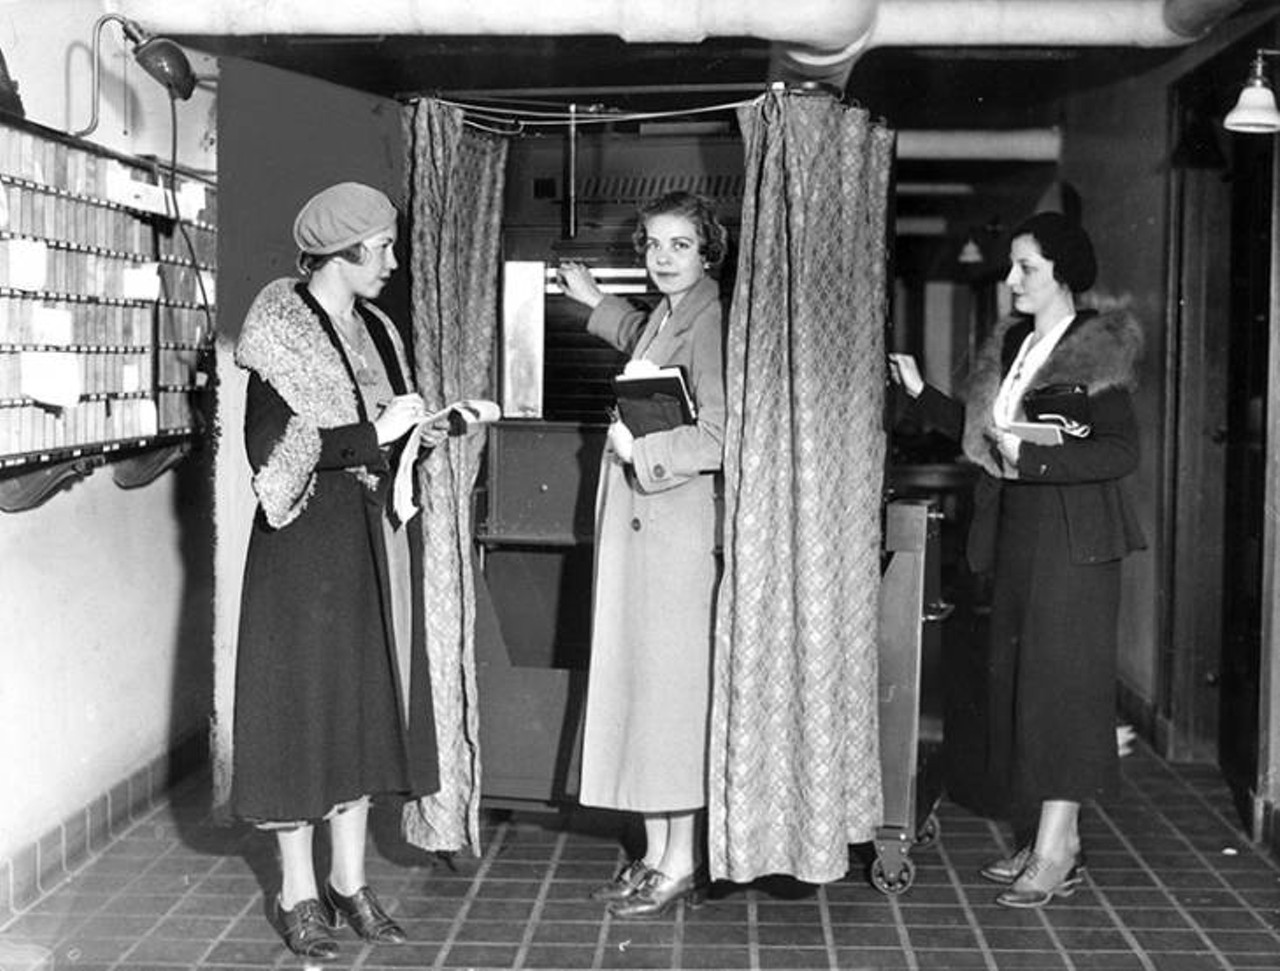  Women Cast Votes, 1932 